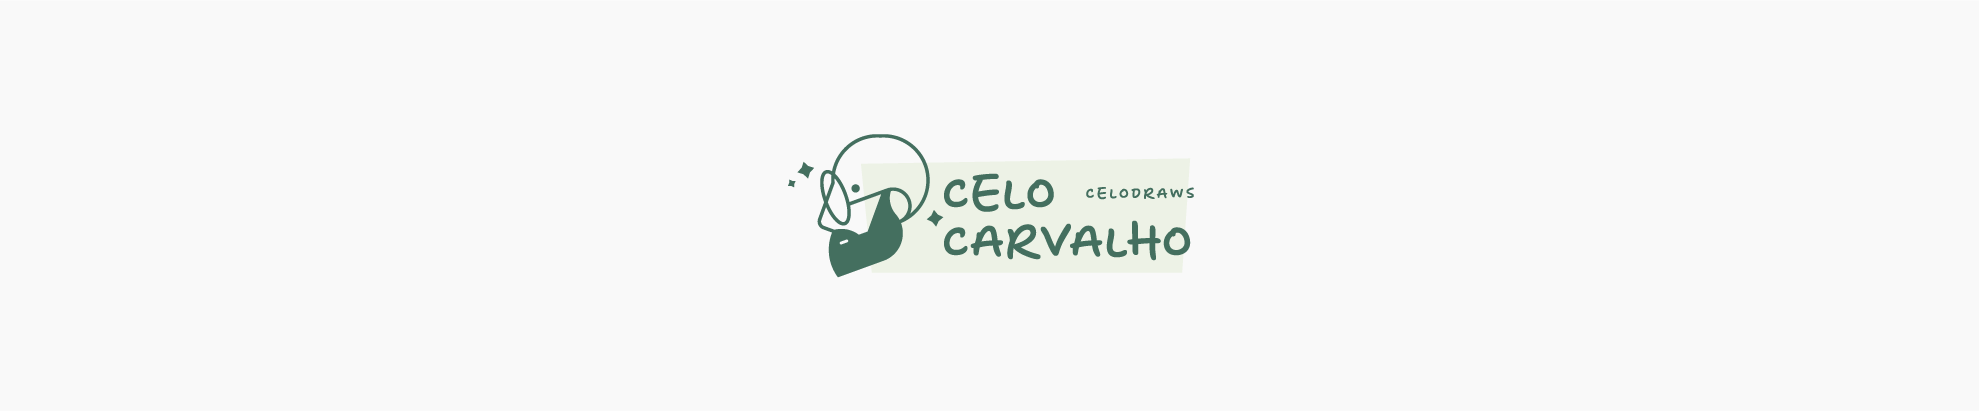 Celo Carvalho profil başlığı